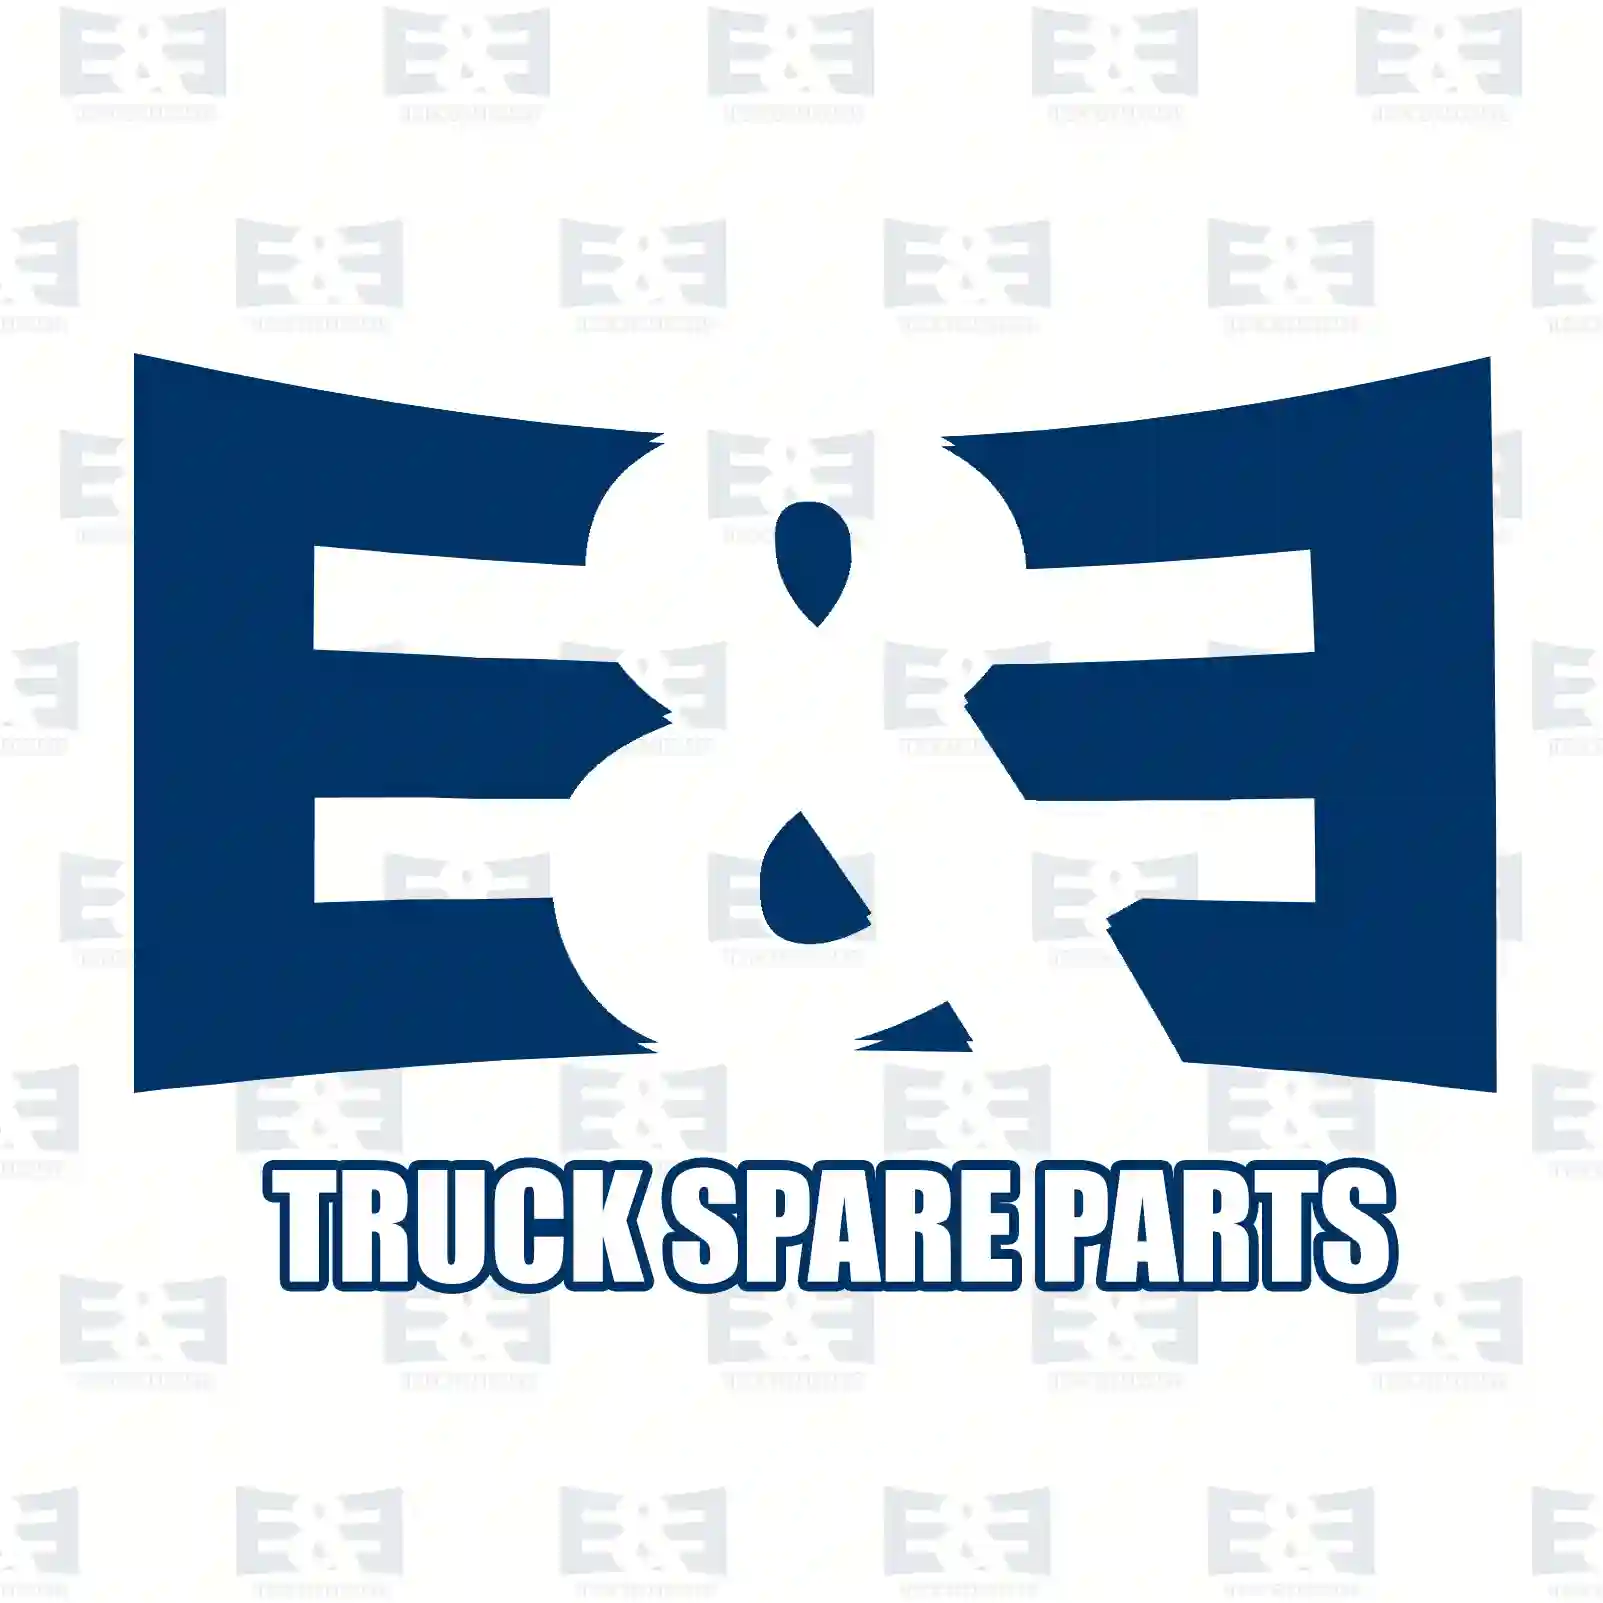 Propeller shaft, 2E2276728, 500391653, 504019 ||  2E2276728 E&E Truck Spare Parts | Truck Spare Parts, Auotomotive Spare Parts Propeller shaft, 2E2276728, 500391653, 504019 ||  2E2276728 E&E Truck Spare Parts | Truck Spare Parts, Auotomotive Spare Parts